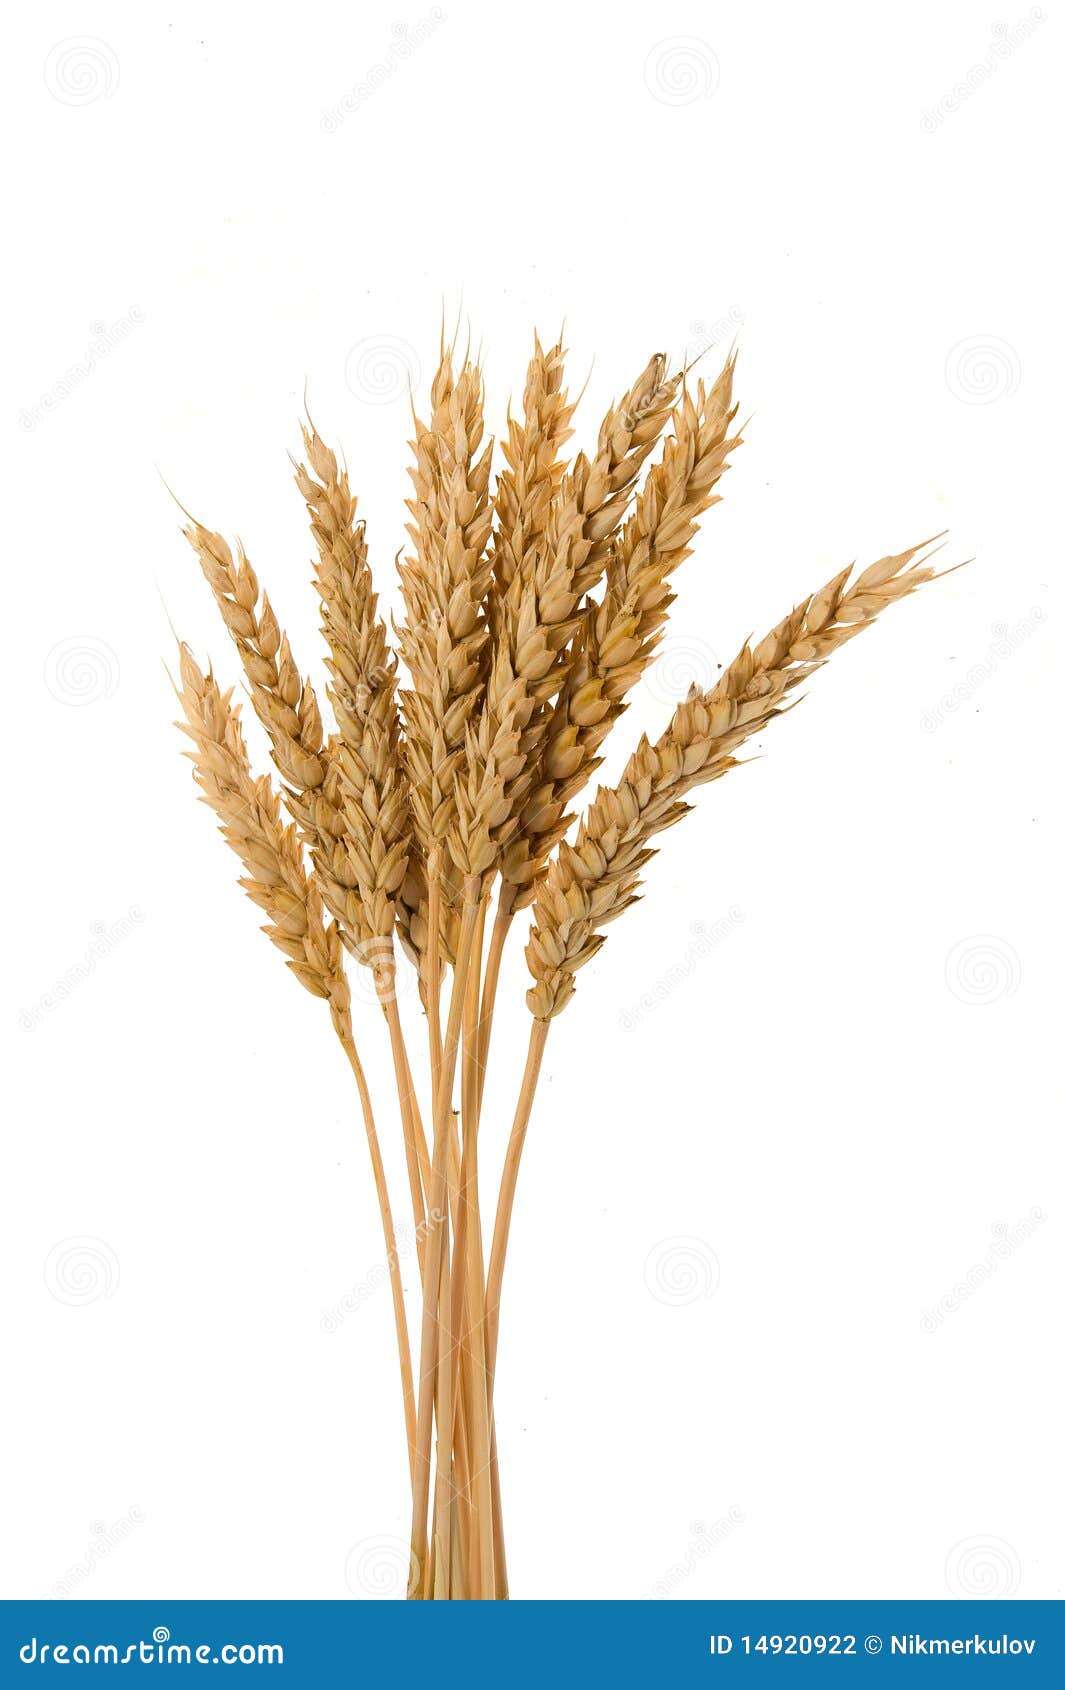 few ears of wheat